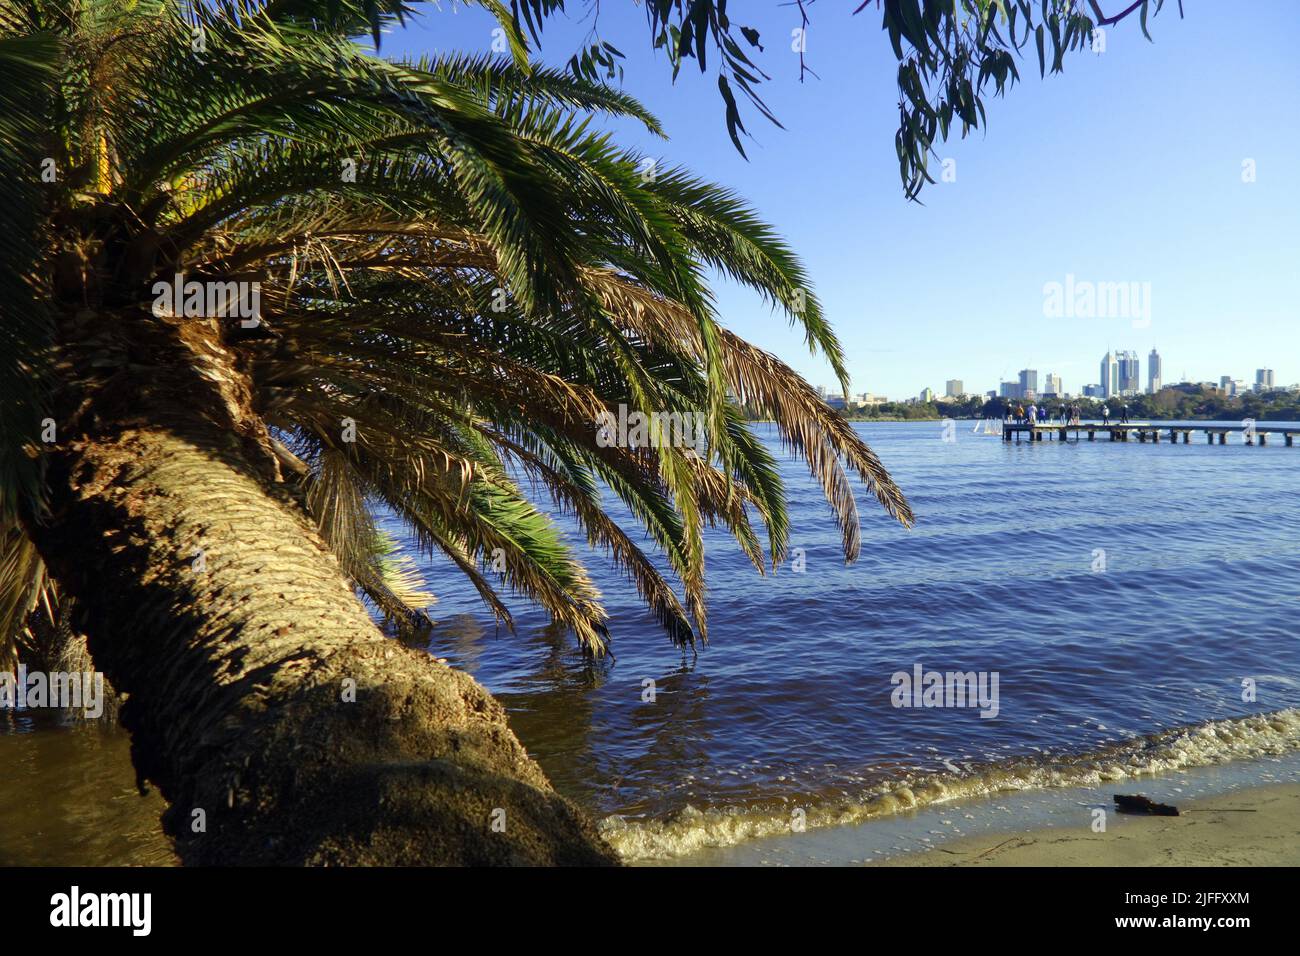 Dattero palma appesa sul Fiume Swan, Maylands, con il CBD di Perth sullo skyline, Perth, Australia Occidentale Foto Stock